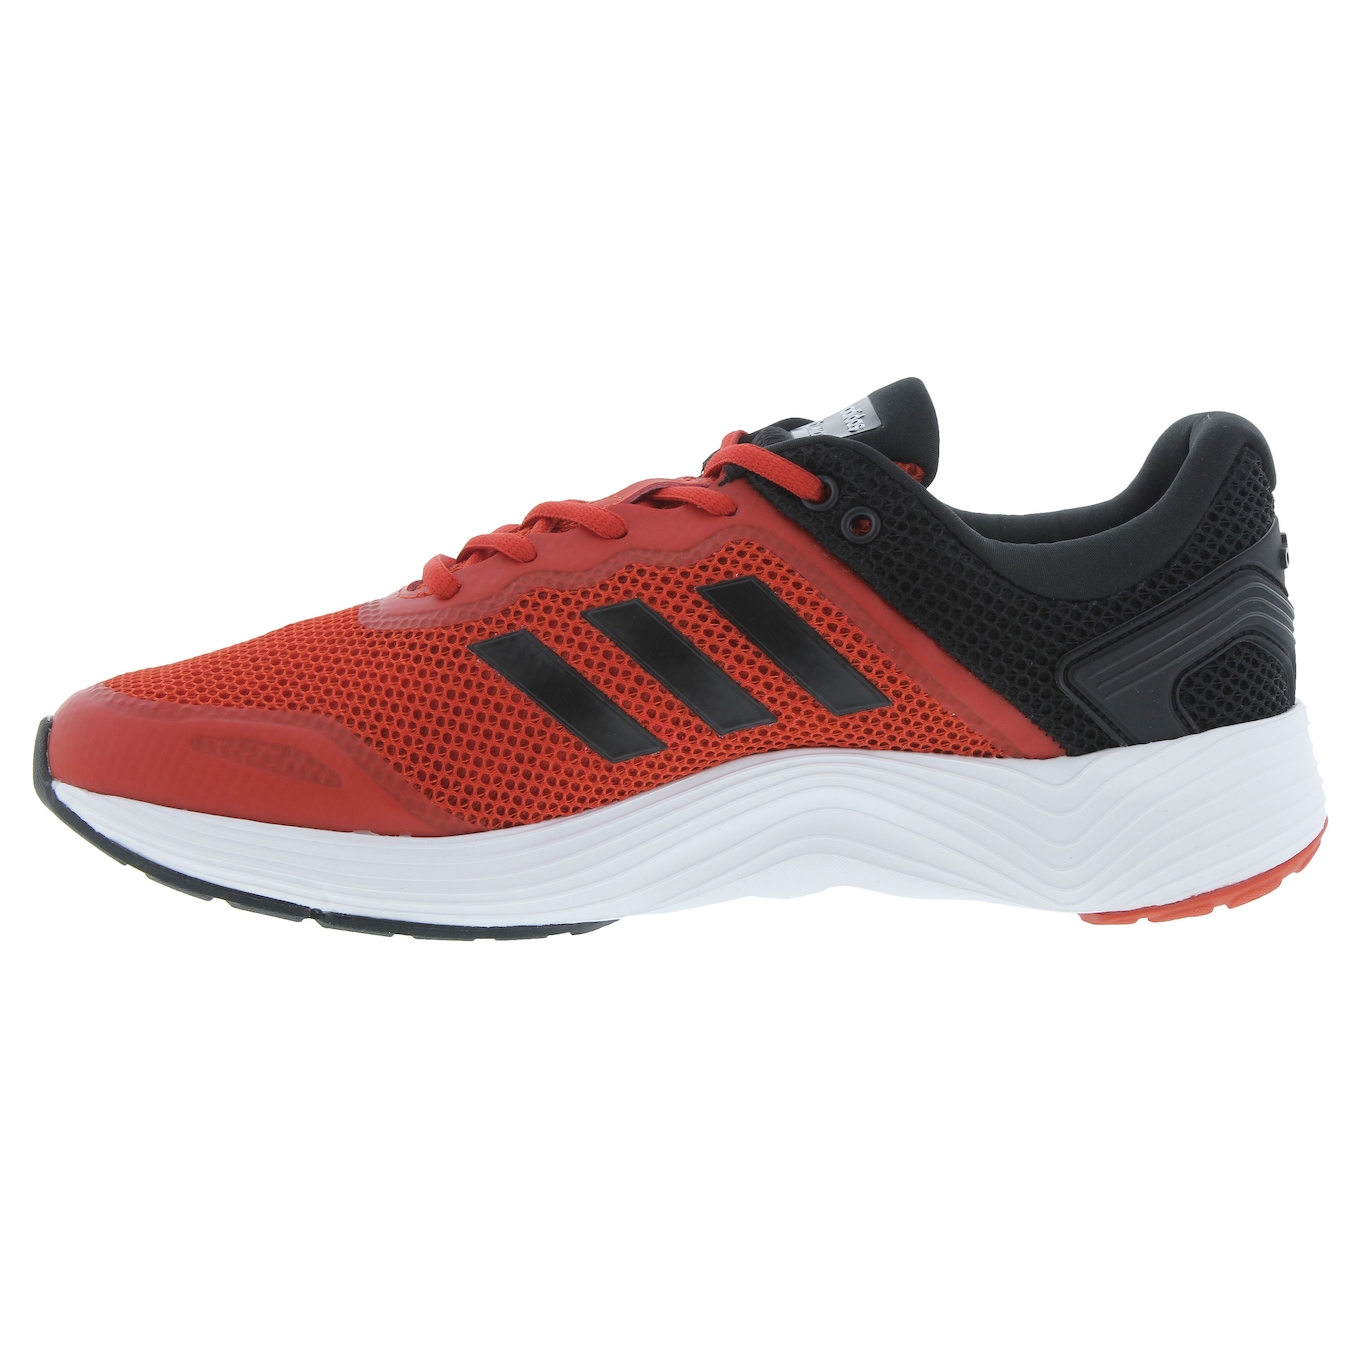 Sport Bras - Tecnologia e conforto com o tênis Adidas FluidCloud